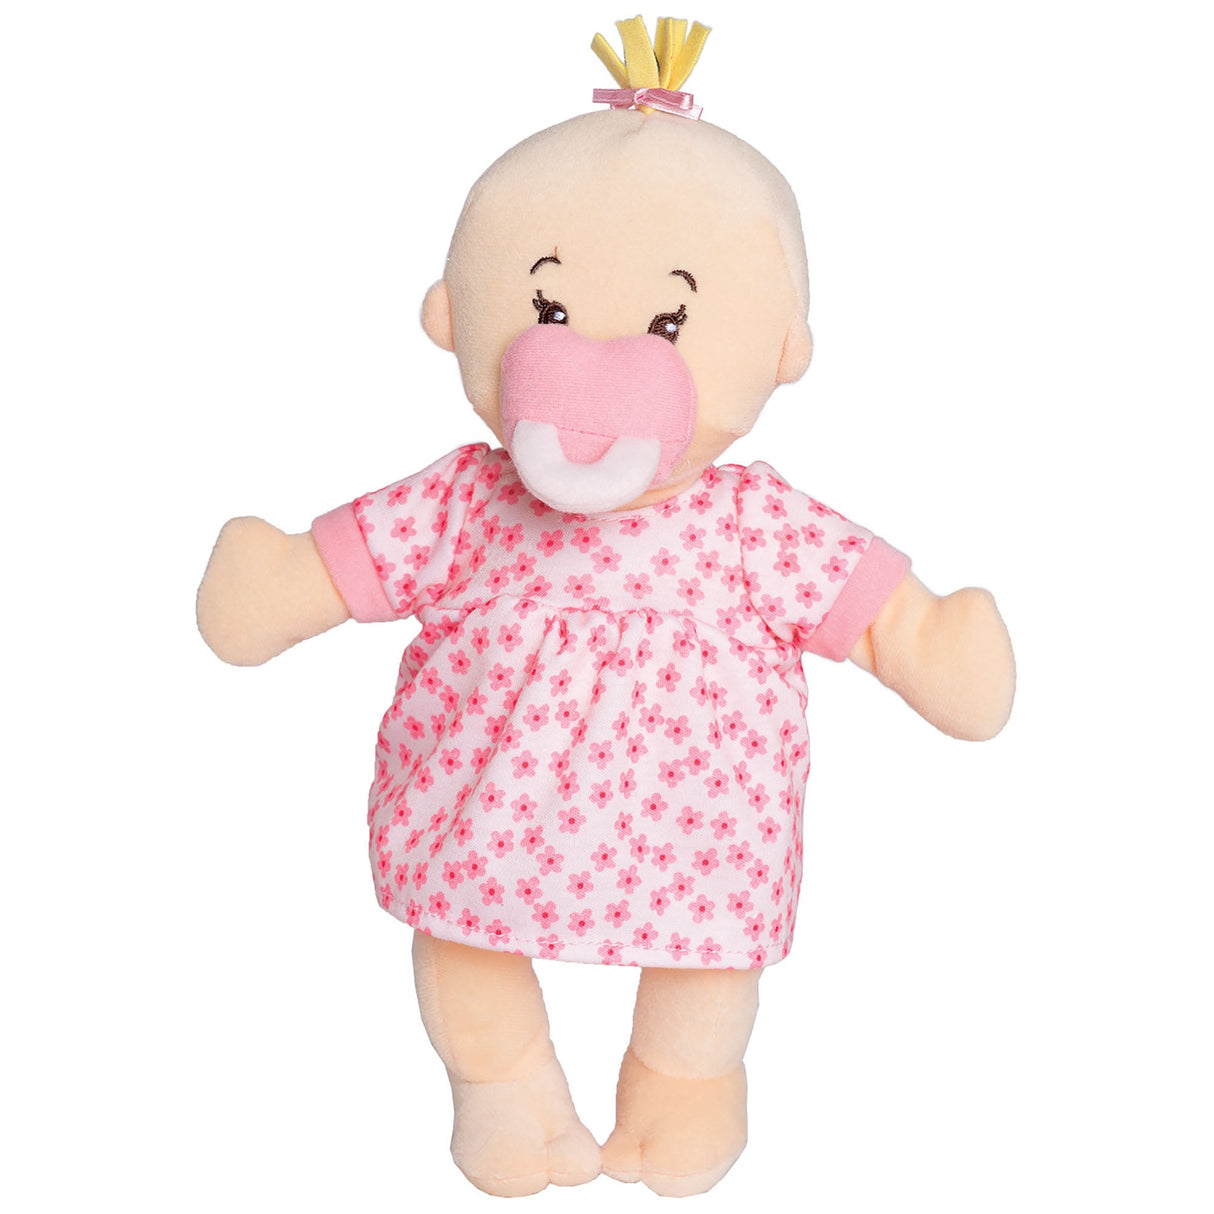 Wee Baby Stella Peach Doll by Manhattan Toy